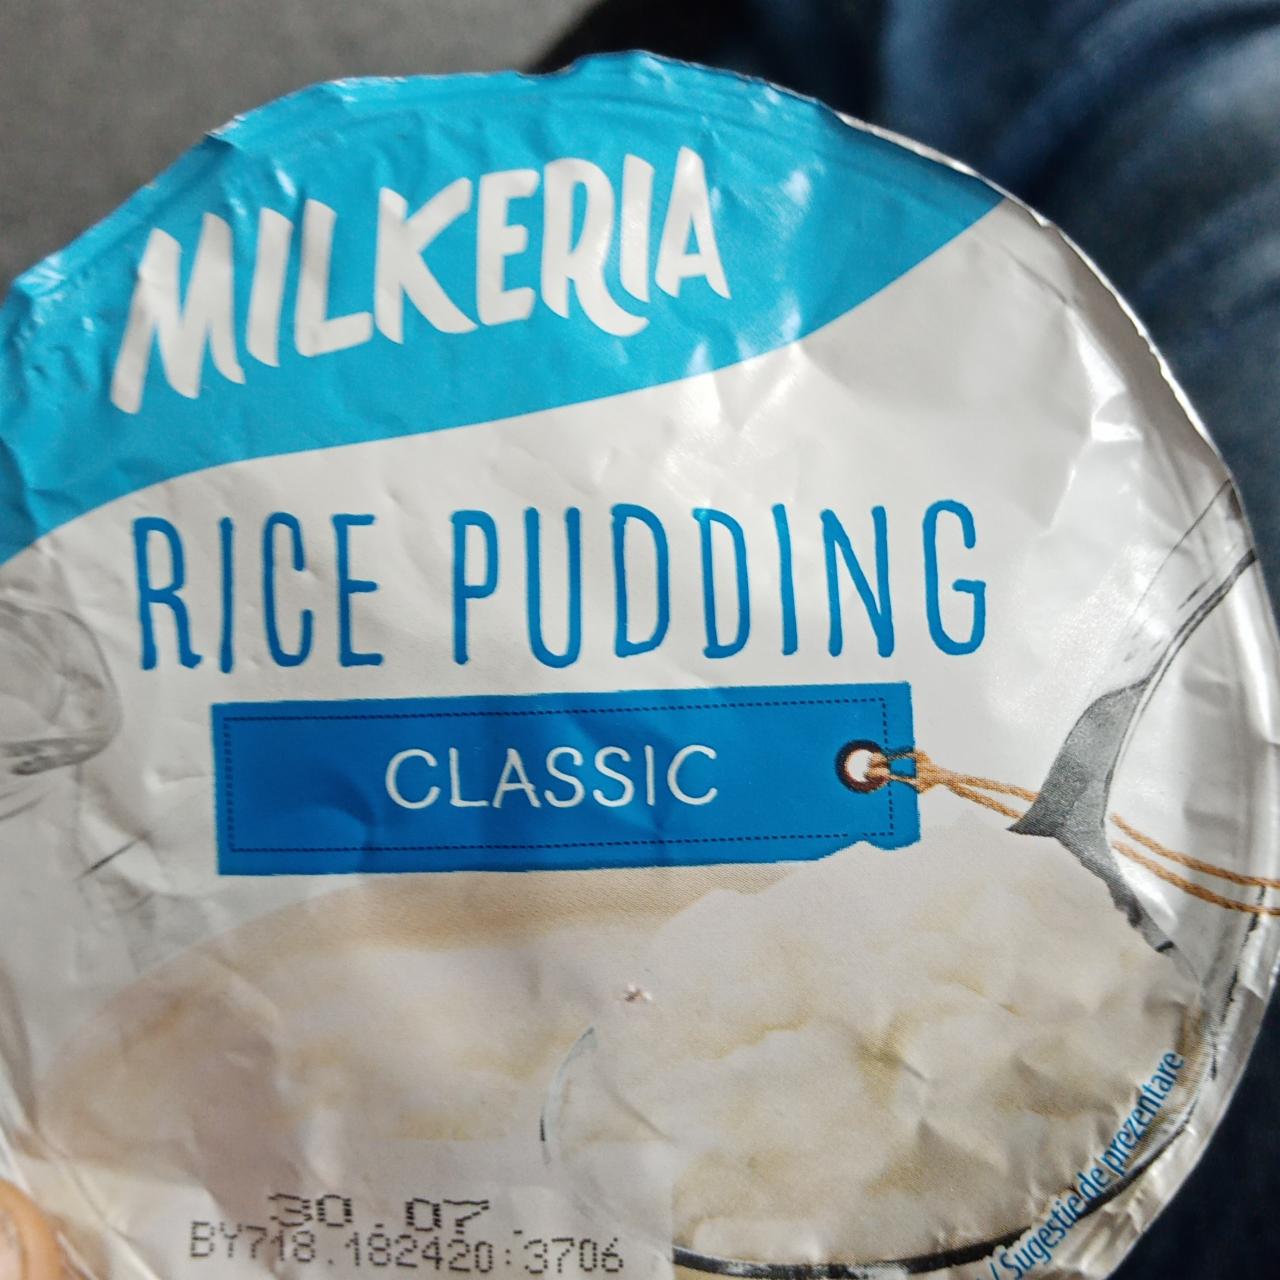 Fotografie - Rice pudding classic Milkeria